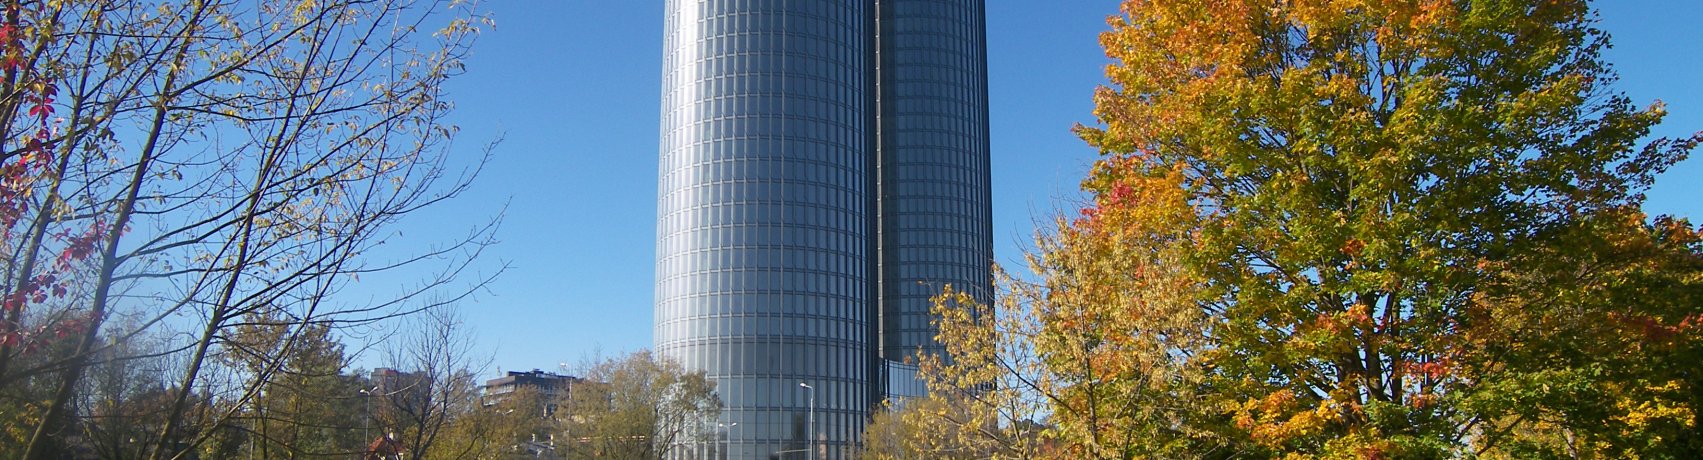 Z-Towers ēku komplekss